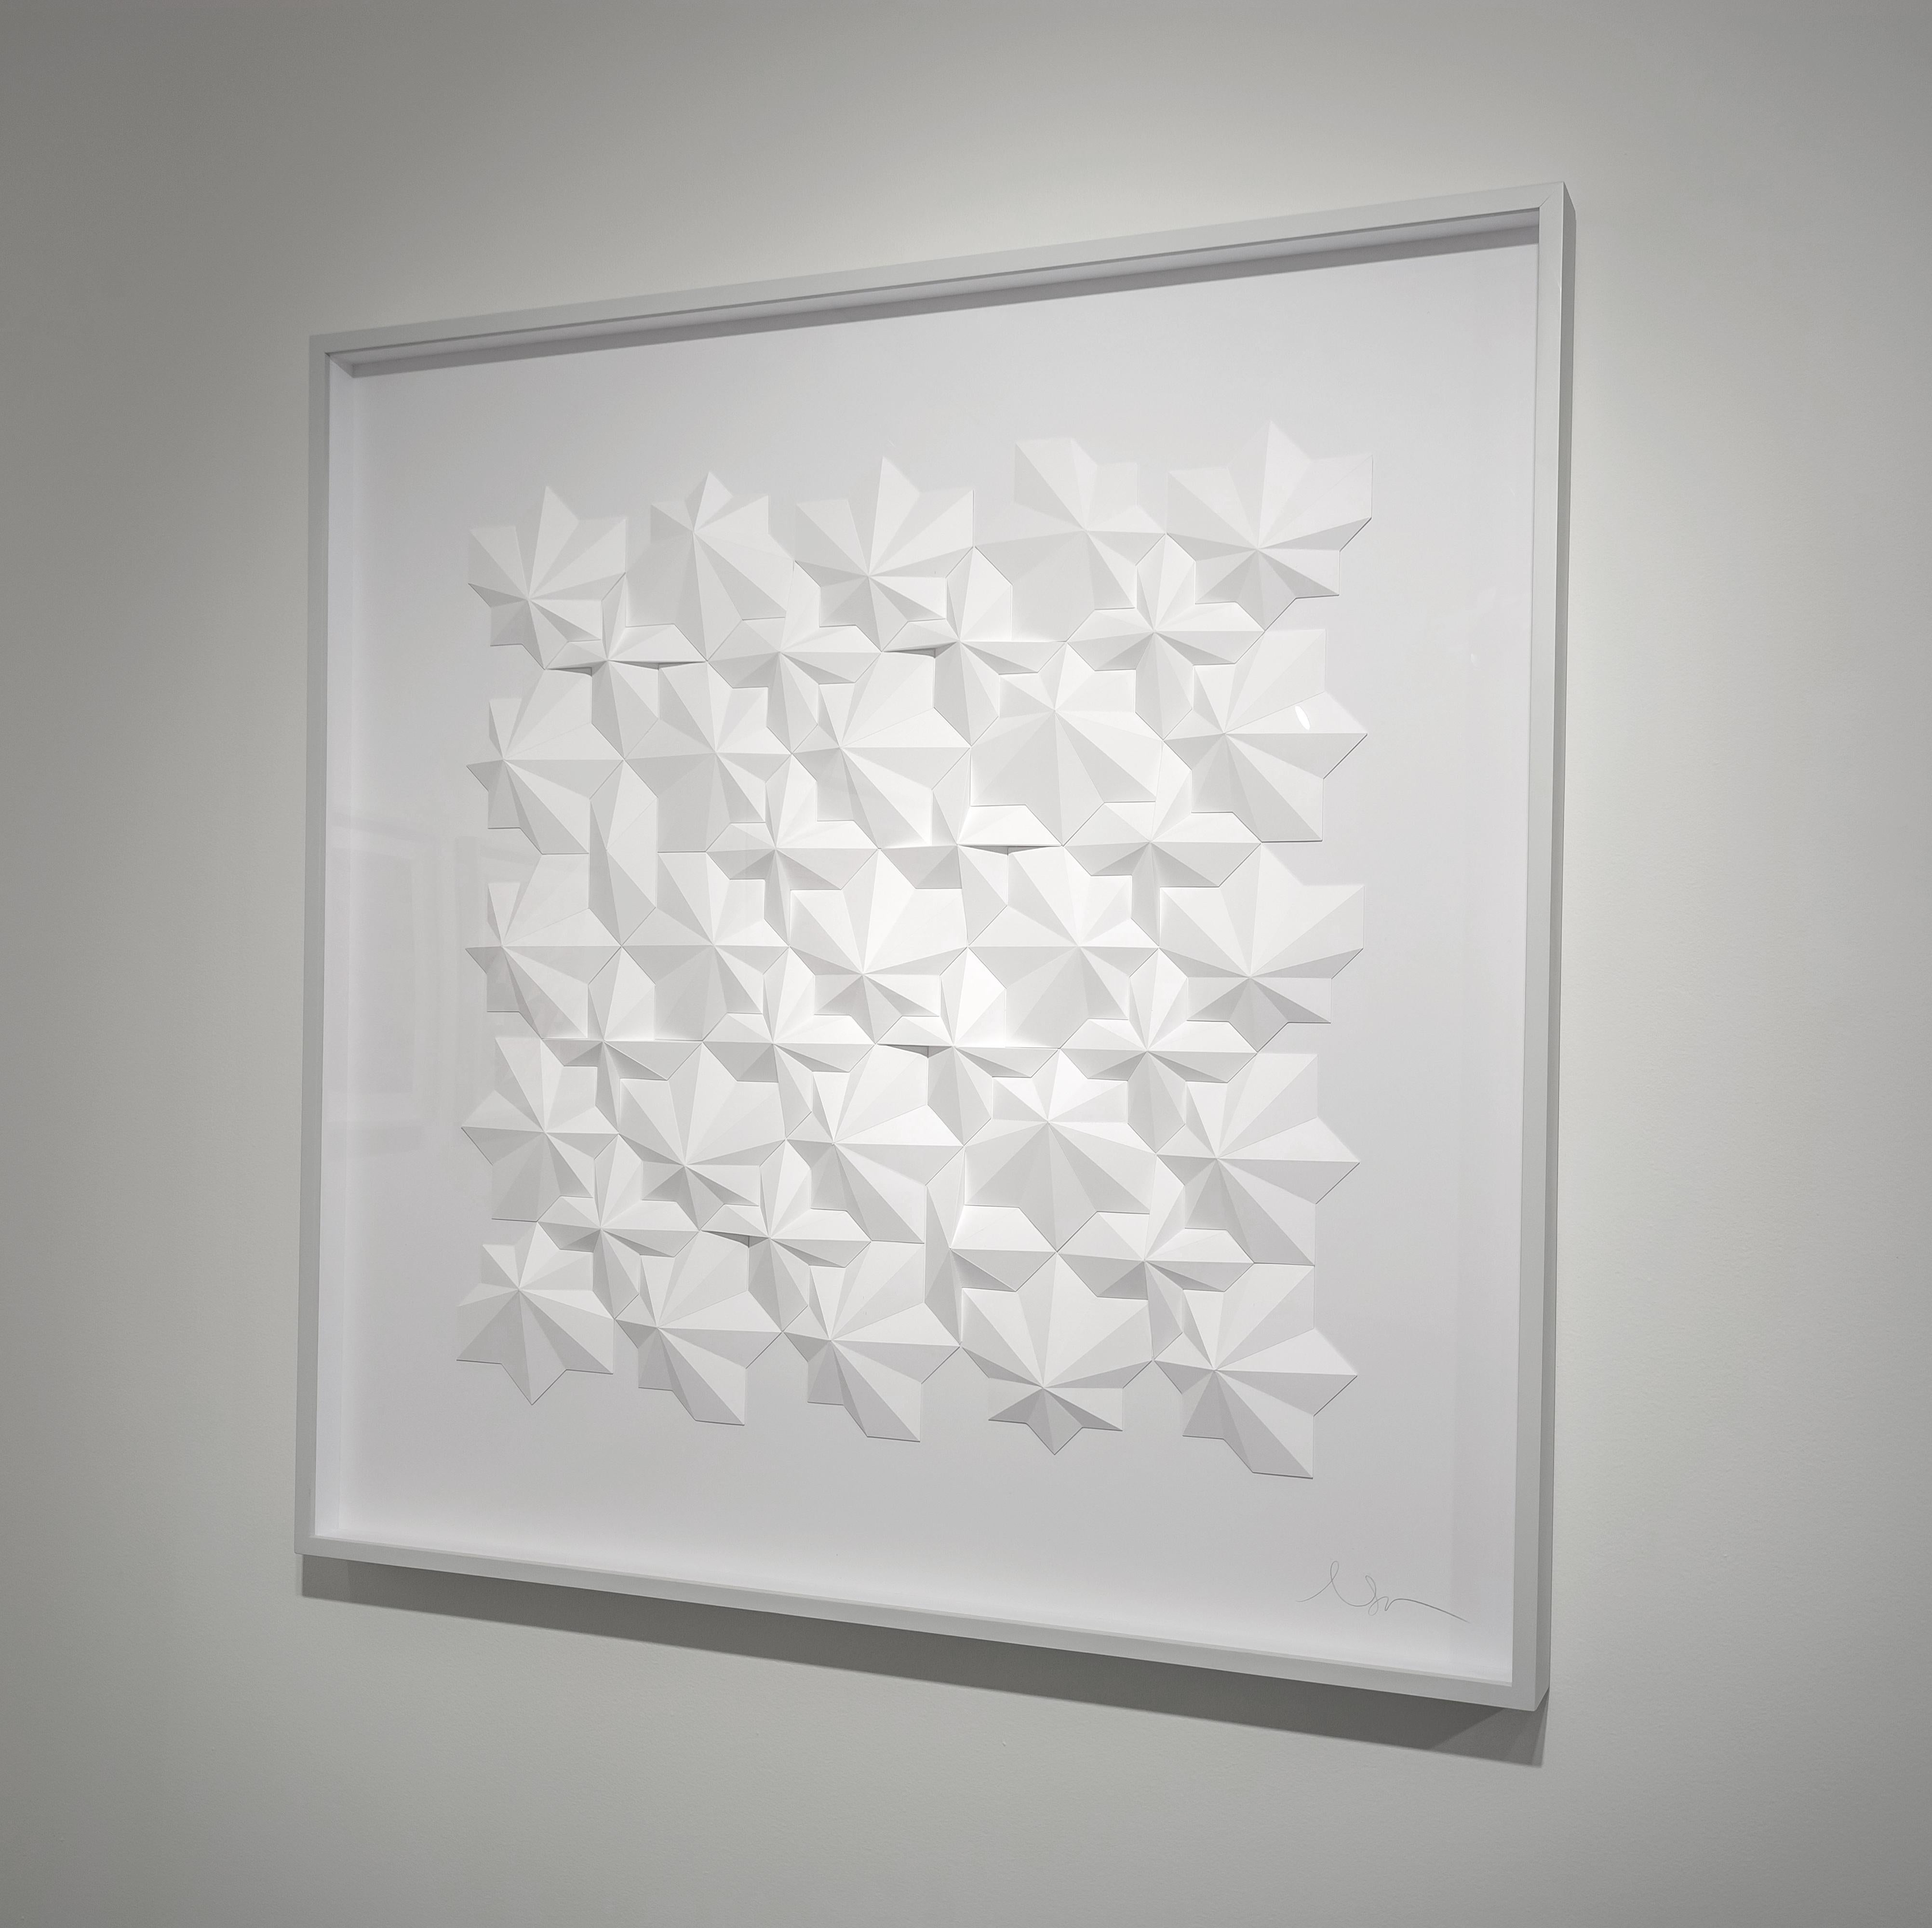 Matt Shlian Abstract Sculpture - Ara 212, contemporary abstract paper sculpture, 2021